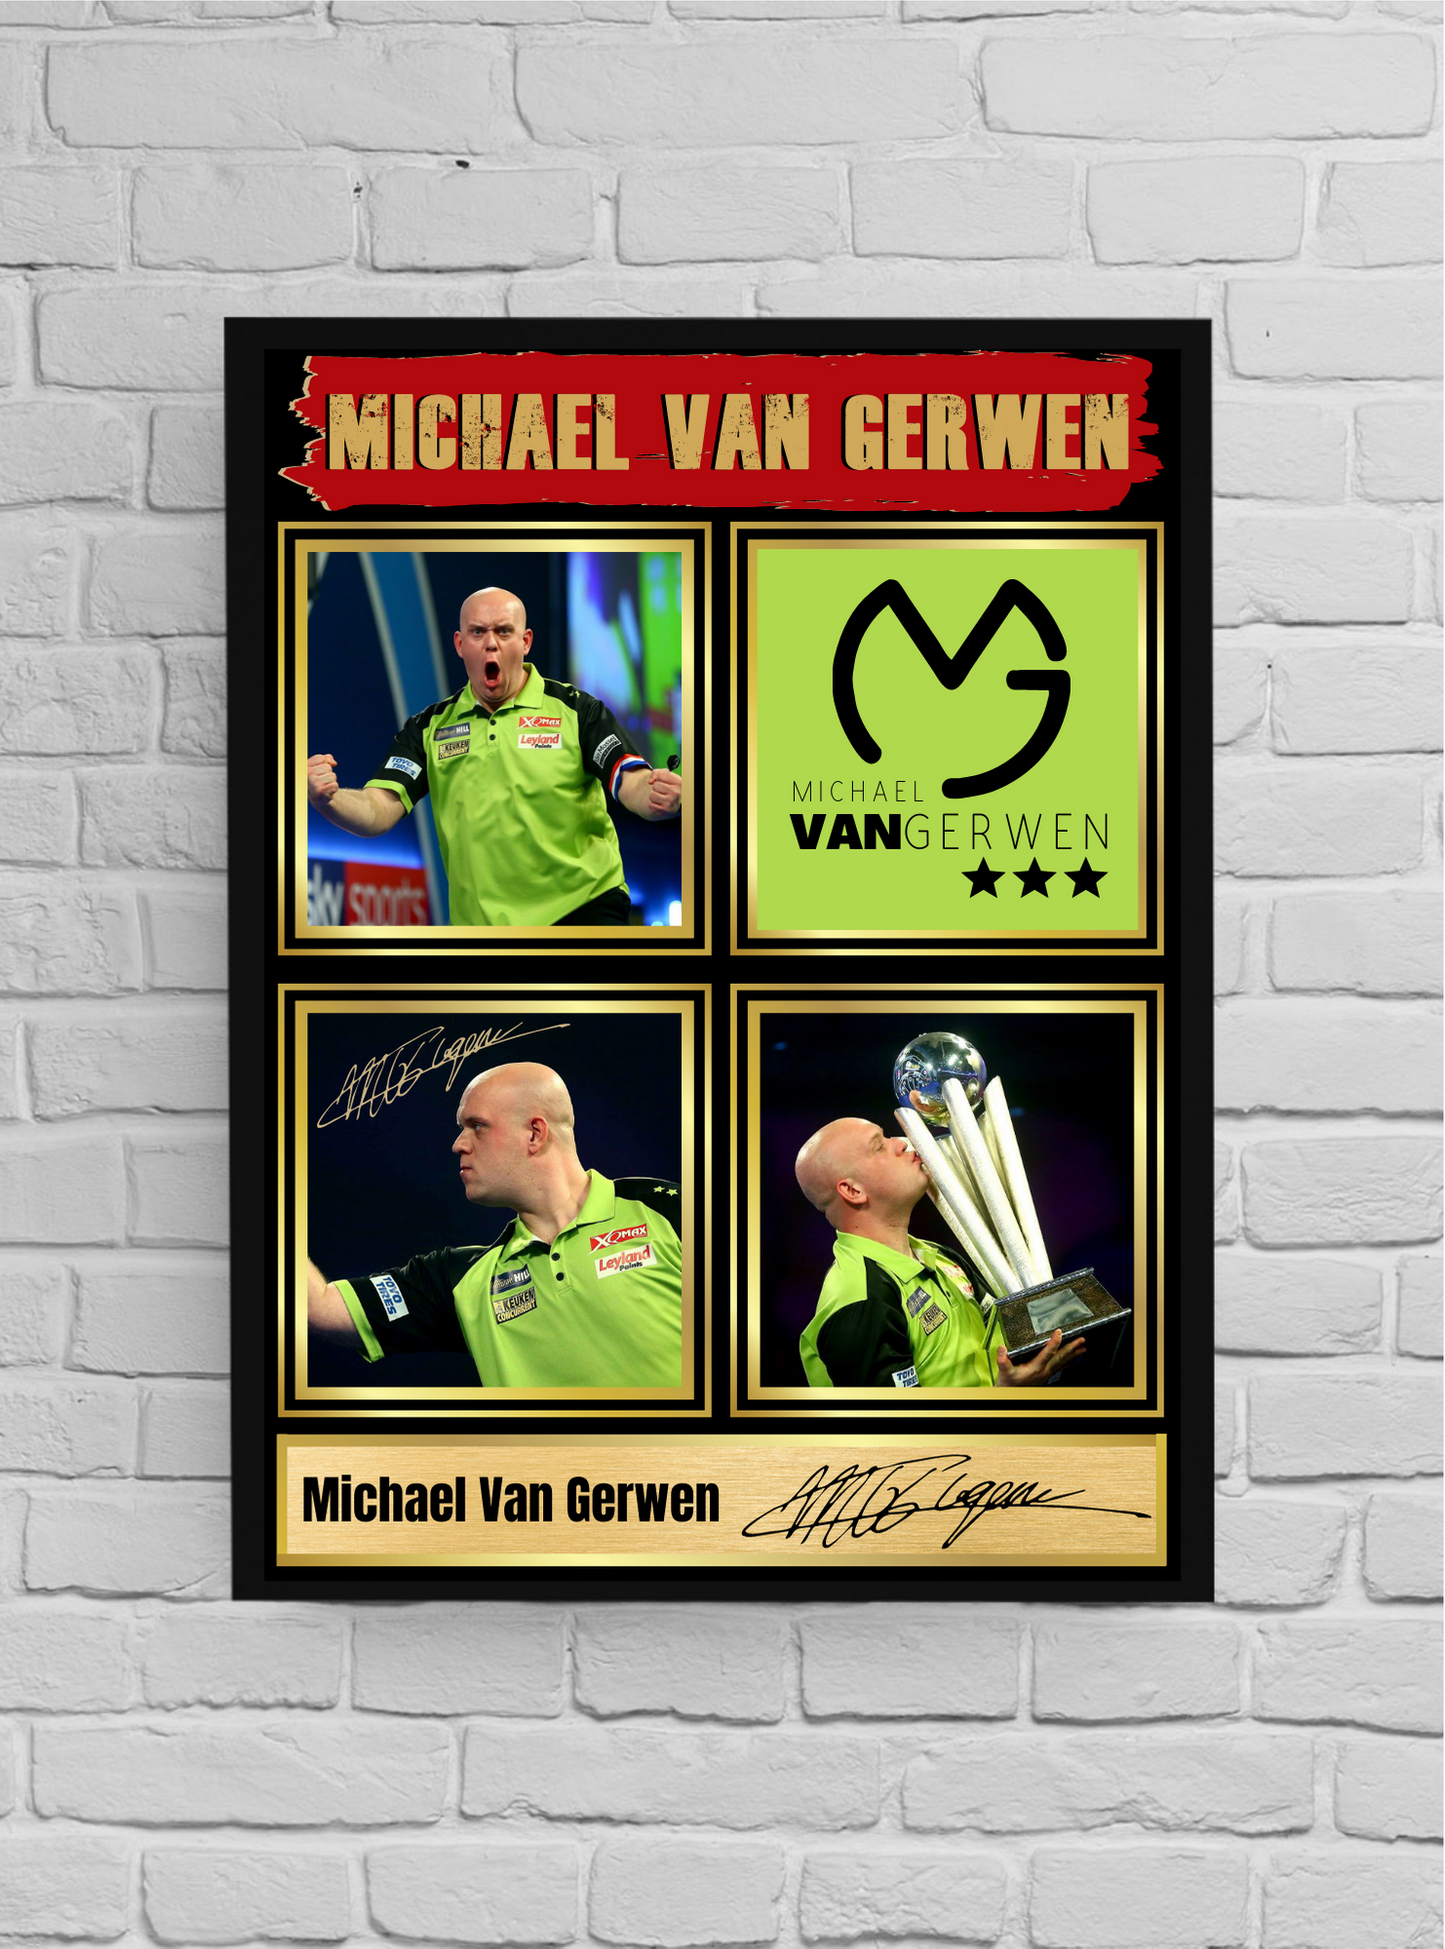 Michael van Gerwen (Darts) #10 - Memorabilia/Collectible/Signed print